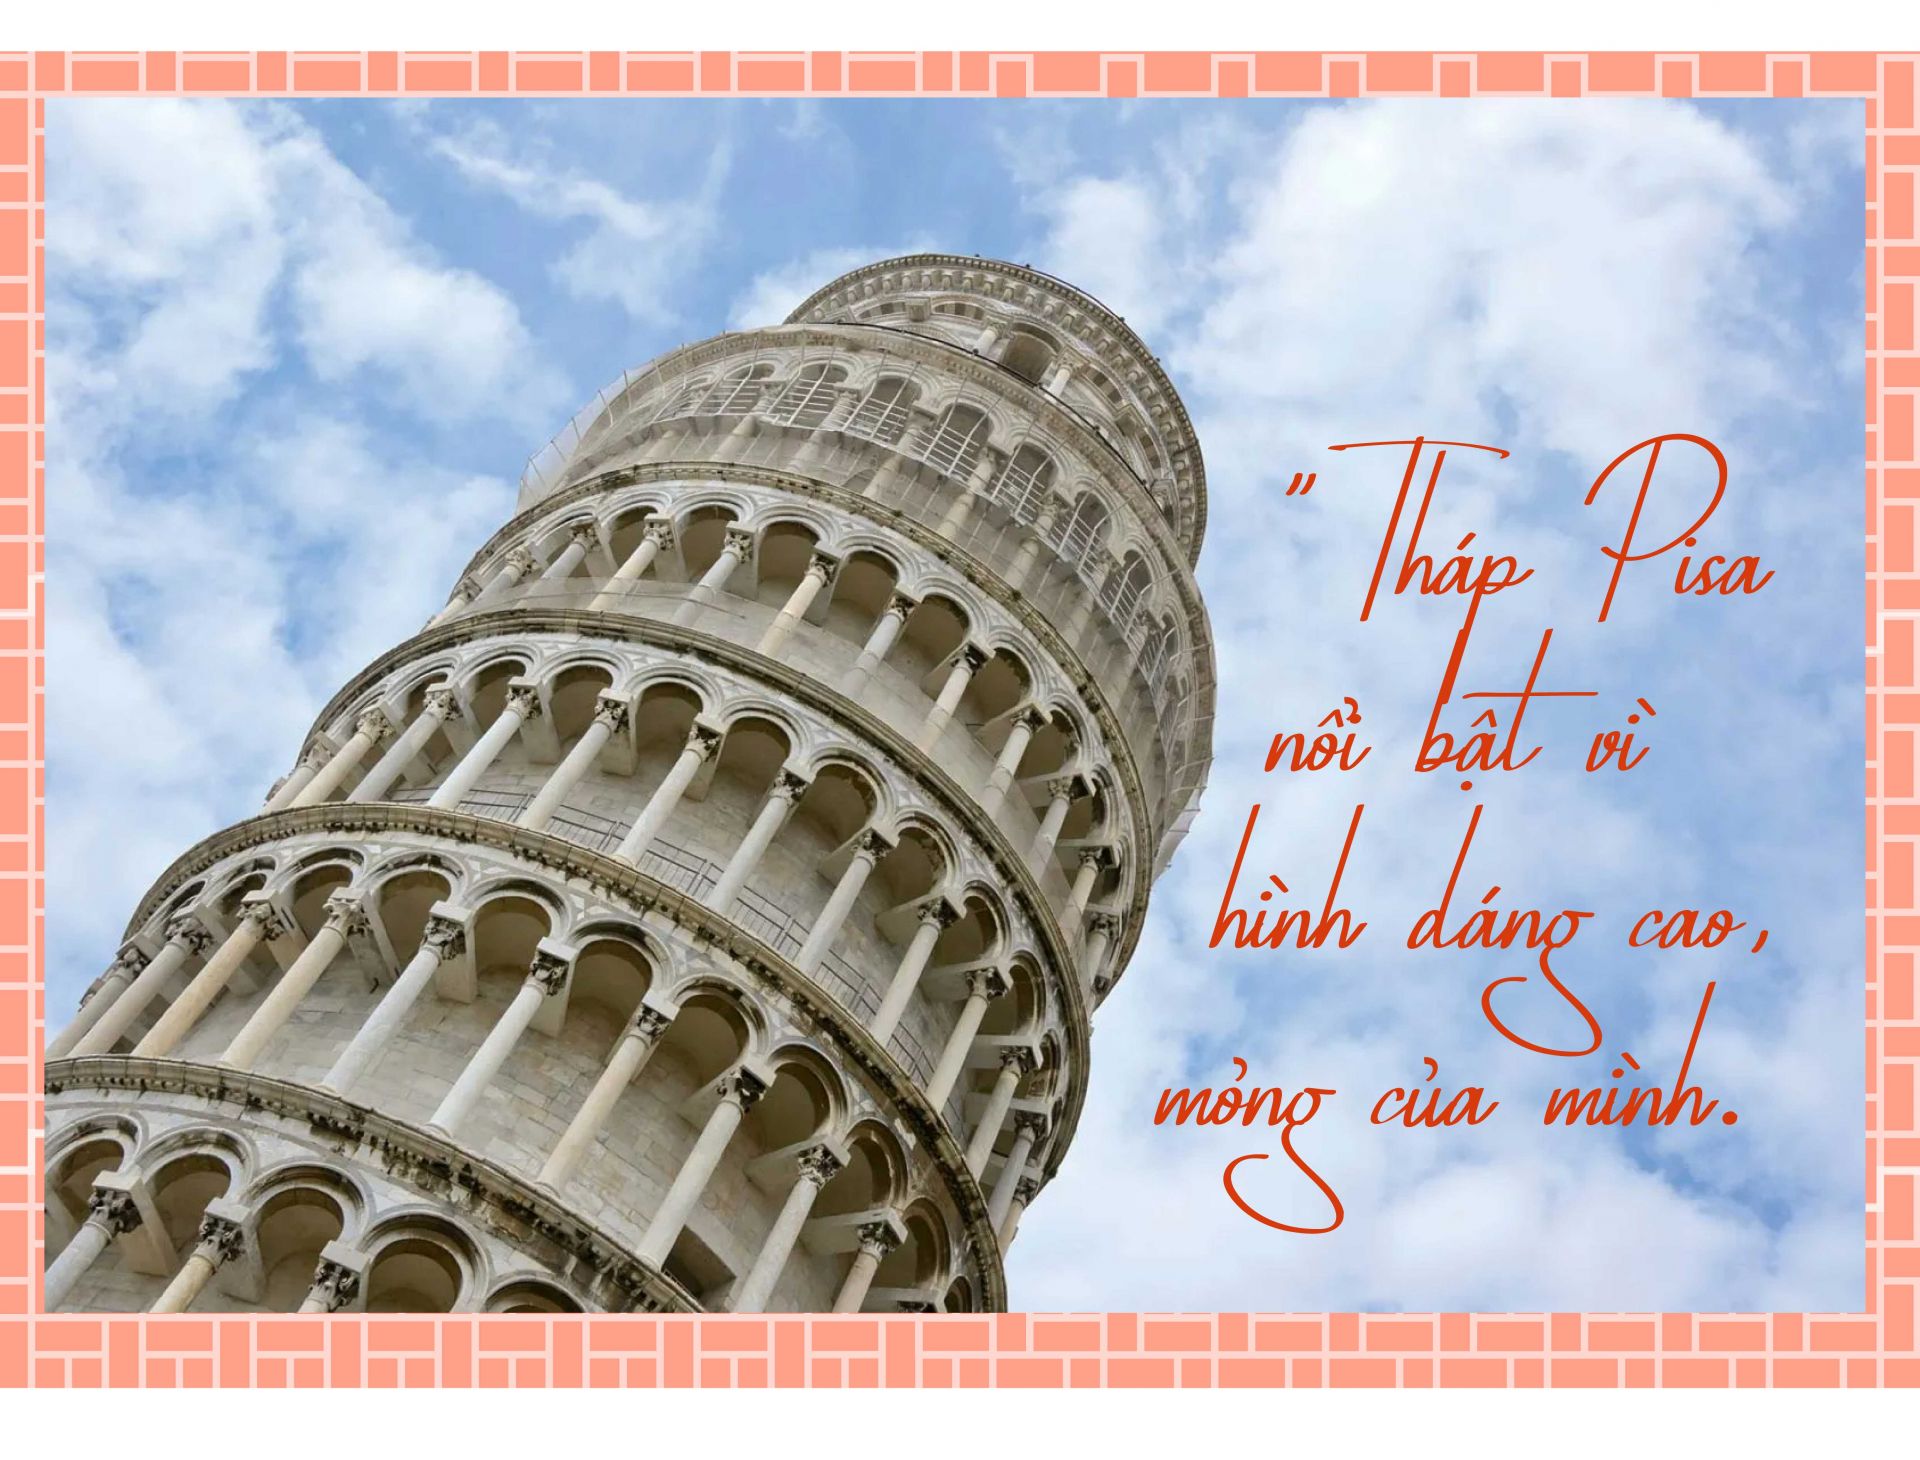 Tại quảng trường Kì diệu (Piazza dei Miracoli), nếu chú ý
kỹ bạn sẽ thấy không chỉ có tháp Pisa nghiêng mà các kiến
trúc xung quanh đó như nhà thờ và nhà nguyện cũng
không thẳng. Chỉ có điều chiều ngang của chúng phình ra
nên có nghiêng một chút cũng chẳng đáng kể, trong khi
tháp nghiêng lại nổi bật lên vì dáng cao mỏng của mình.